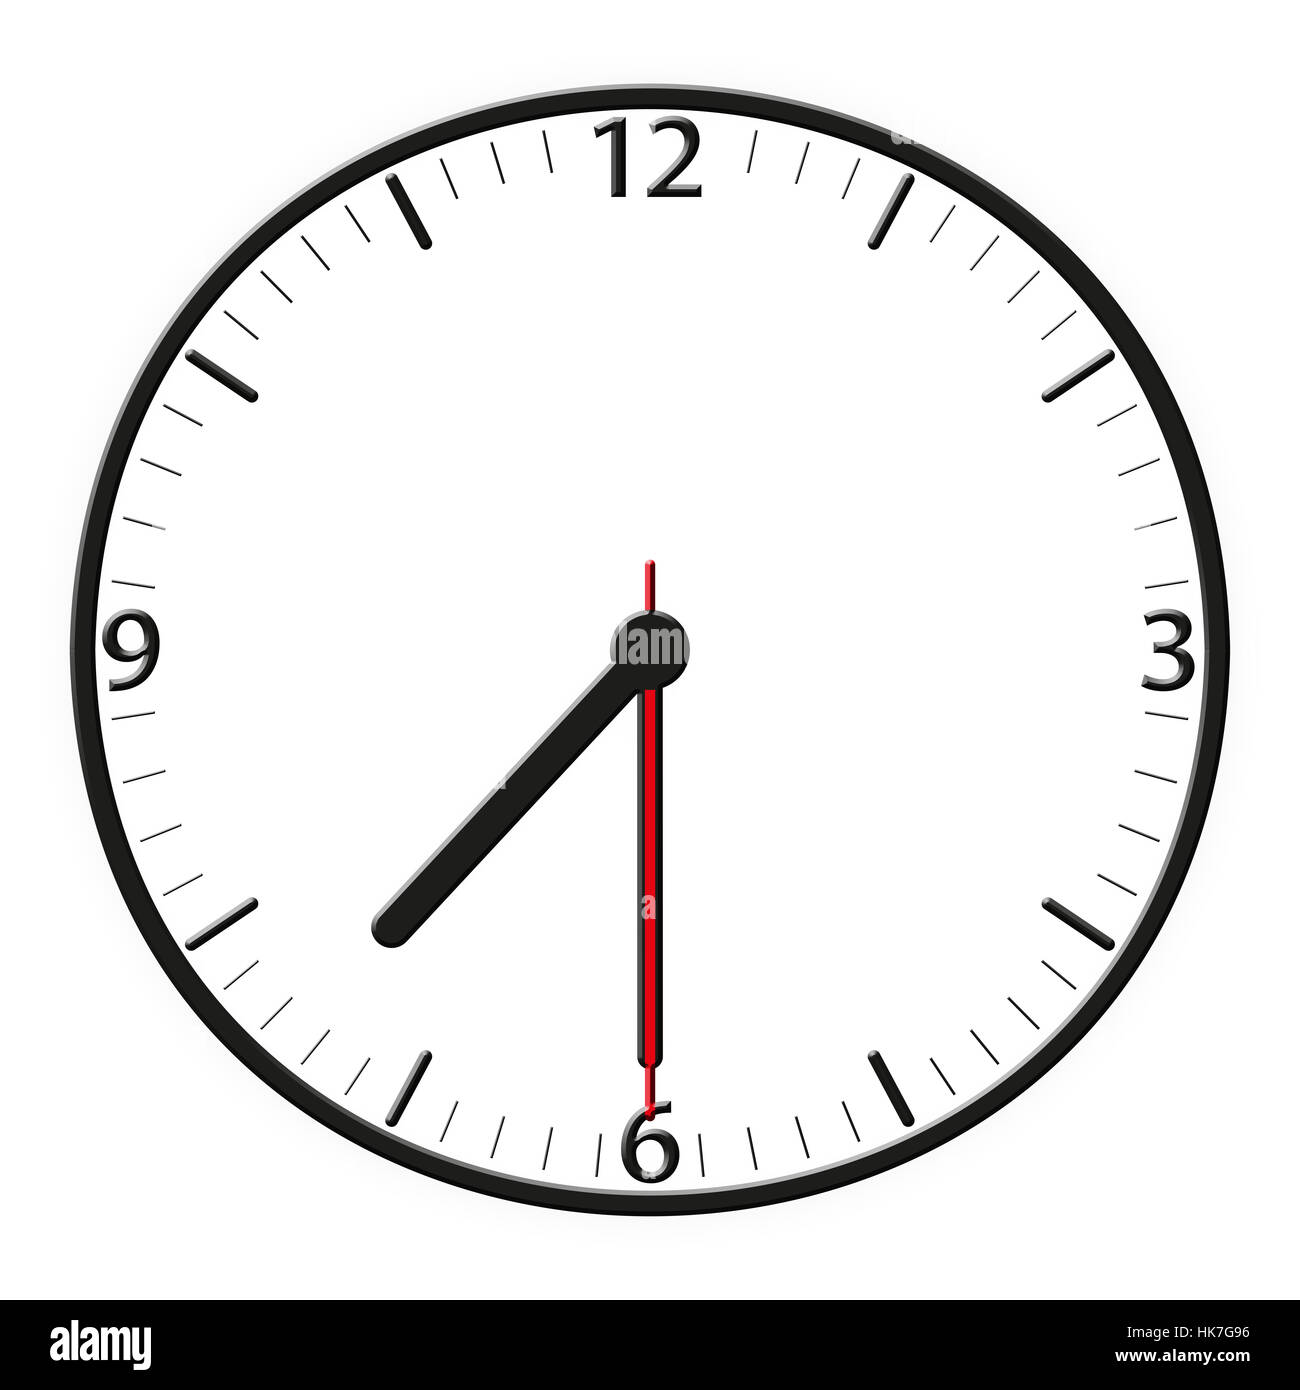 Uhr, Datum, Uhrzeit, Zeitanzeige, Sekunden, Minuten, Stunden, Stunde, Minute  Stockfotografie - Alamy